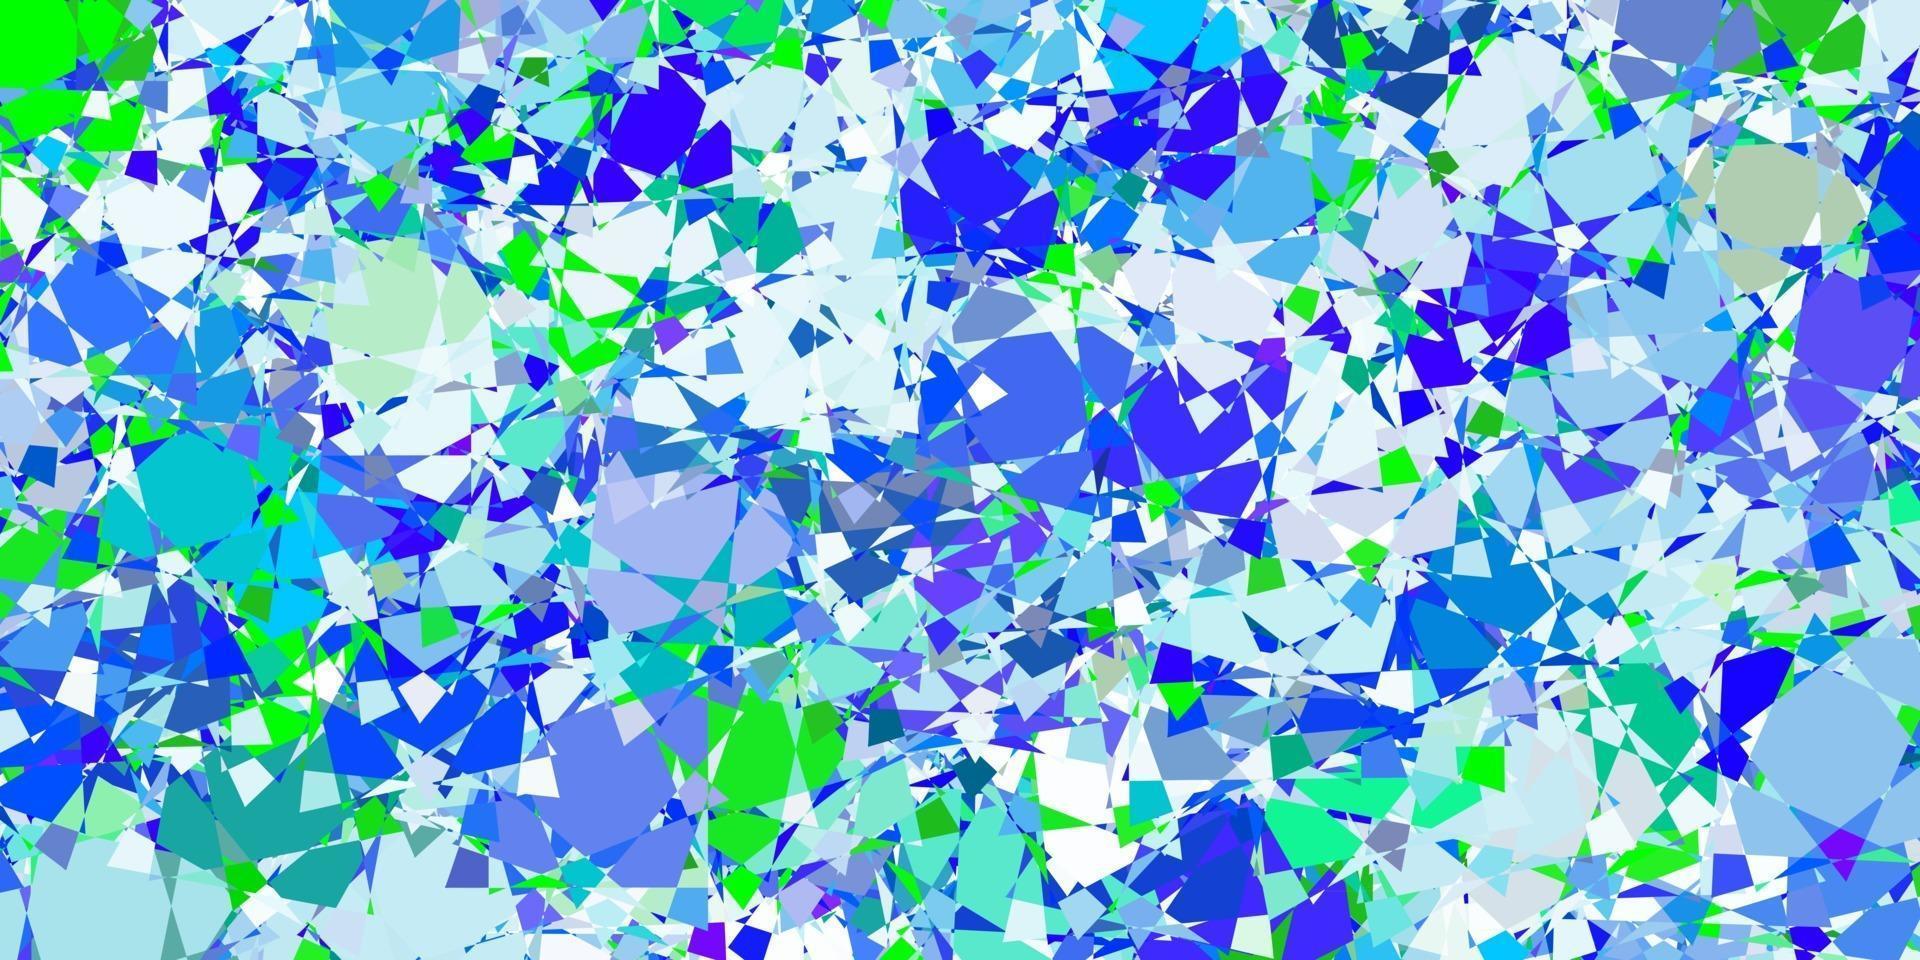 abstract vector achtergrond met kleurrijke kleurverloop